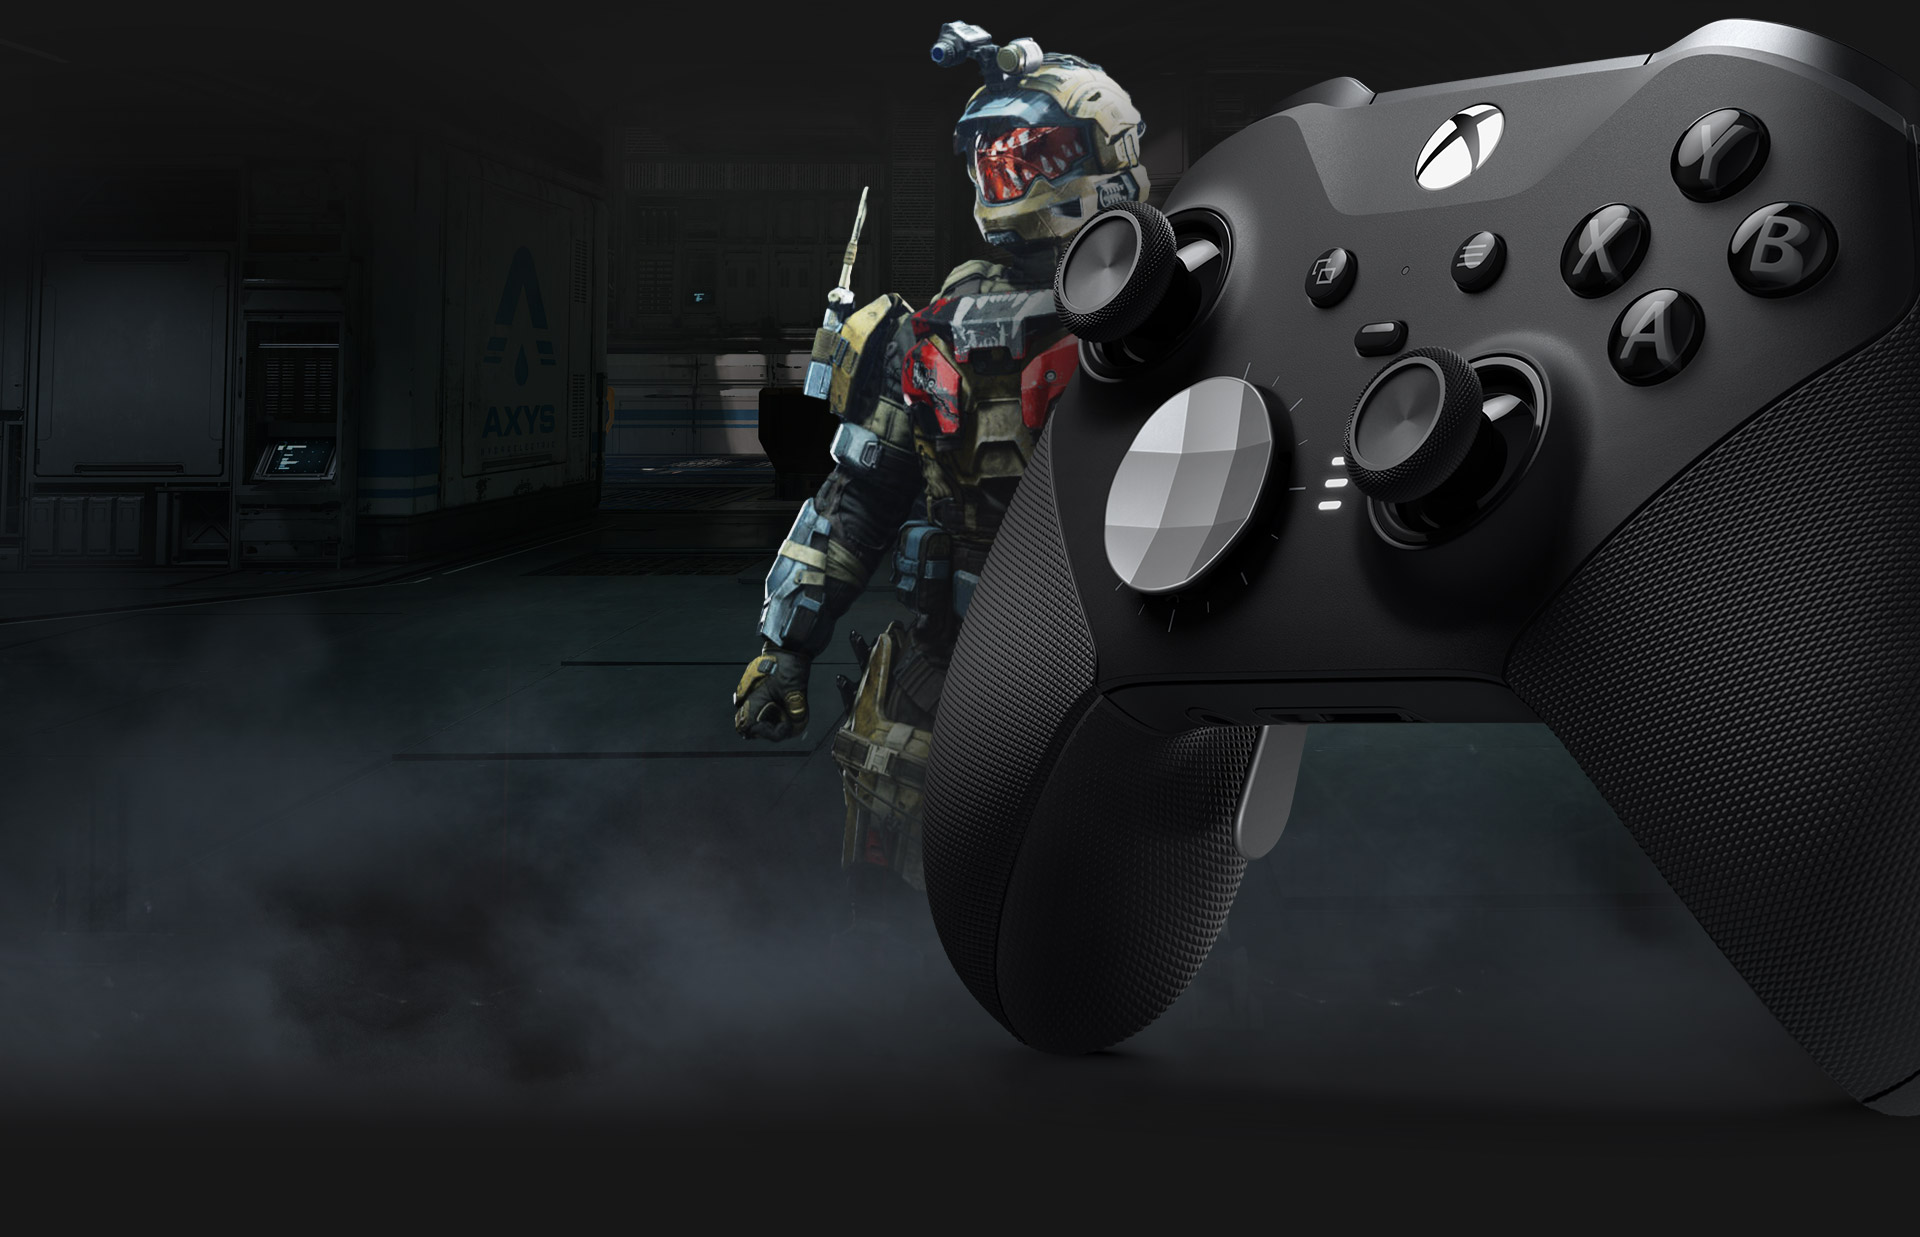 Bezprzewodowy kontroler Xbox Elite Series 2 widziany z przodu z lewej strony, naprzeciwko niego znajduje się Spartanin z gry Halo Infinite.